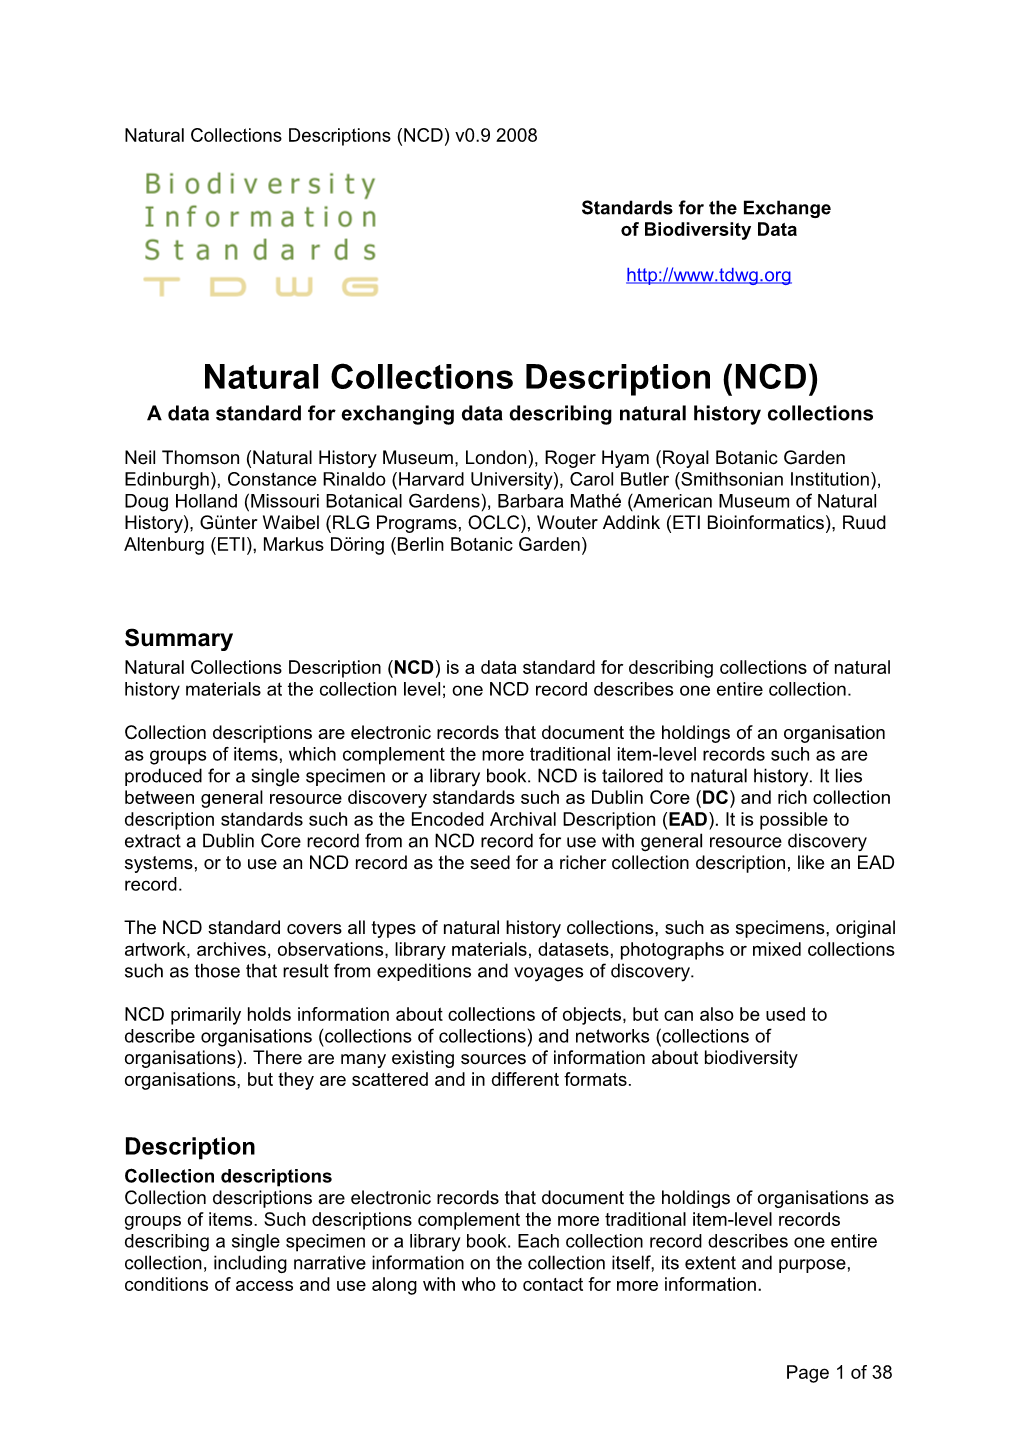 Natural Collections Descriptions (NCD) V0.9 2008